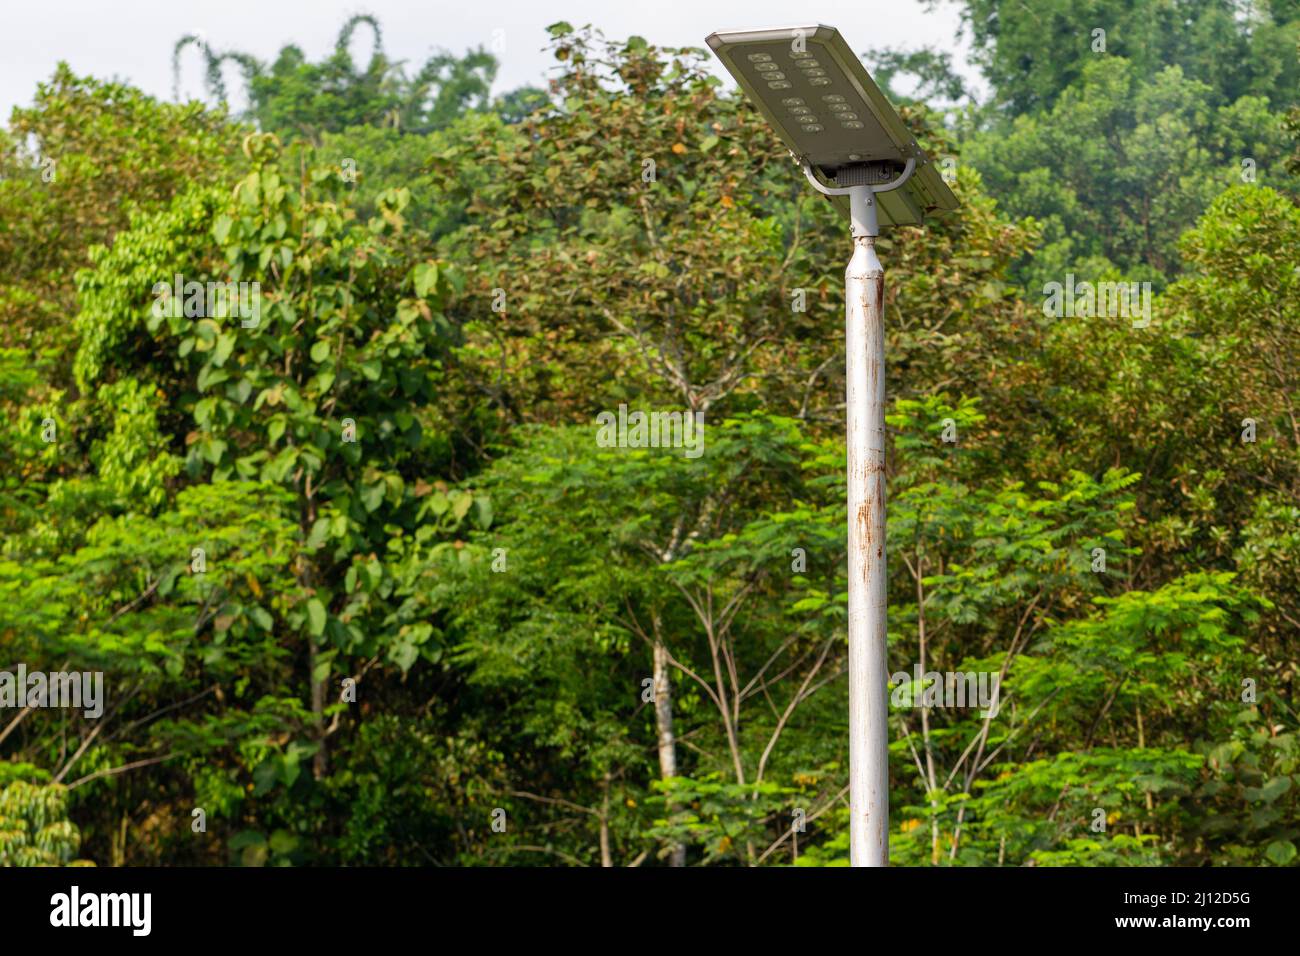 L'uso di pannelli solari per soddisfare le esigenze di energia elettrica in aree tropicali che hanno abbondante luce solare, conservazione delle risorse naturali Foto Stock